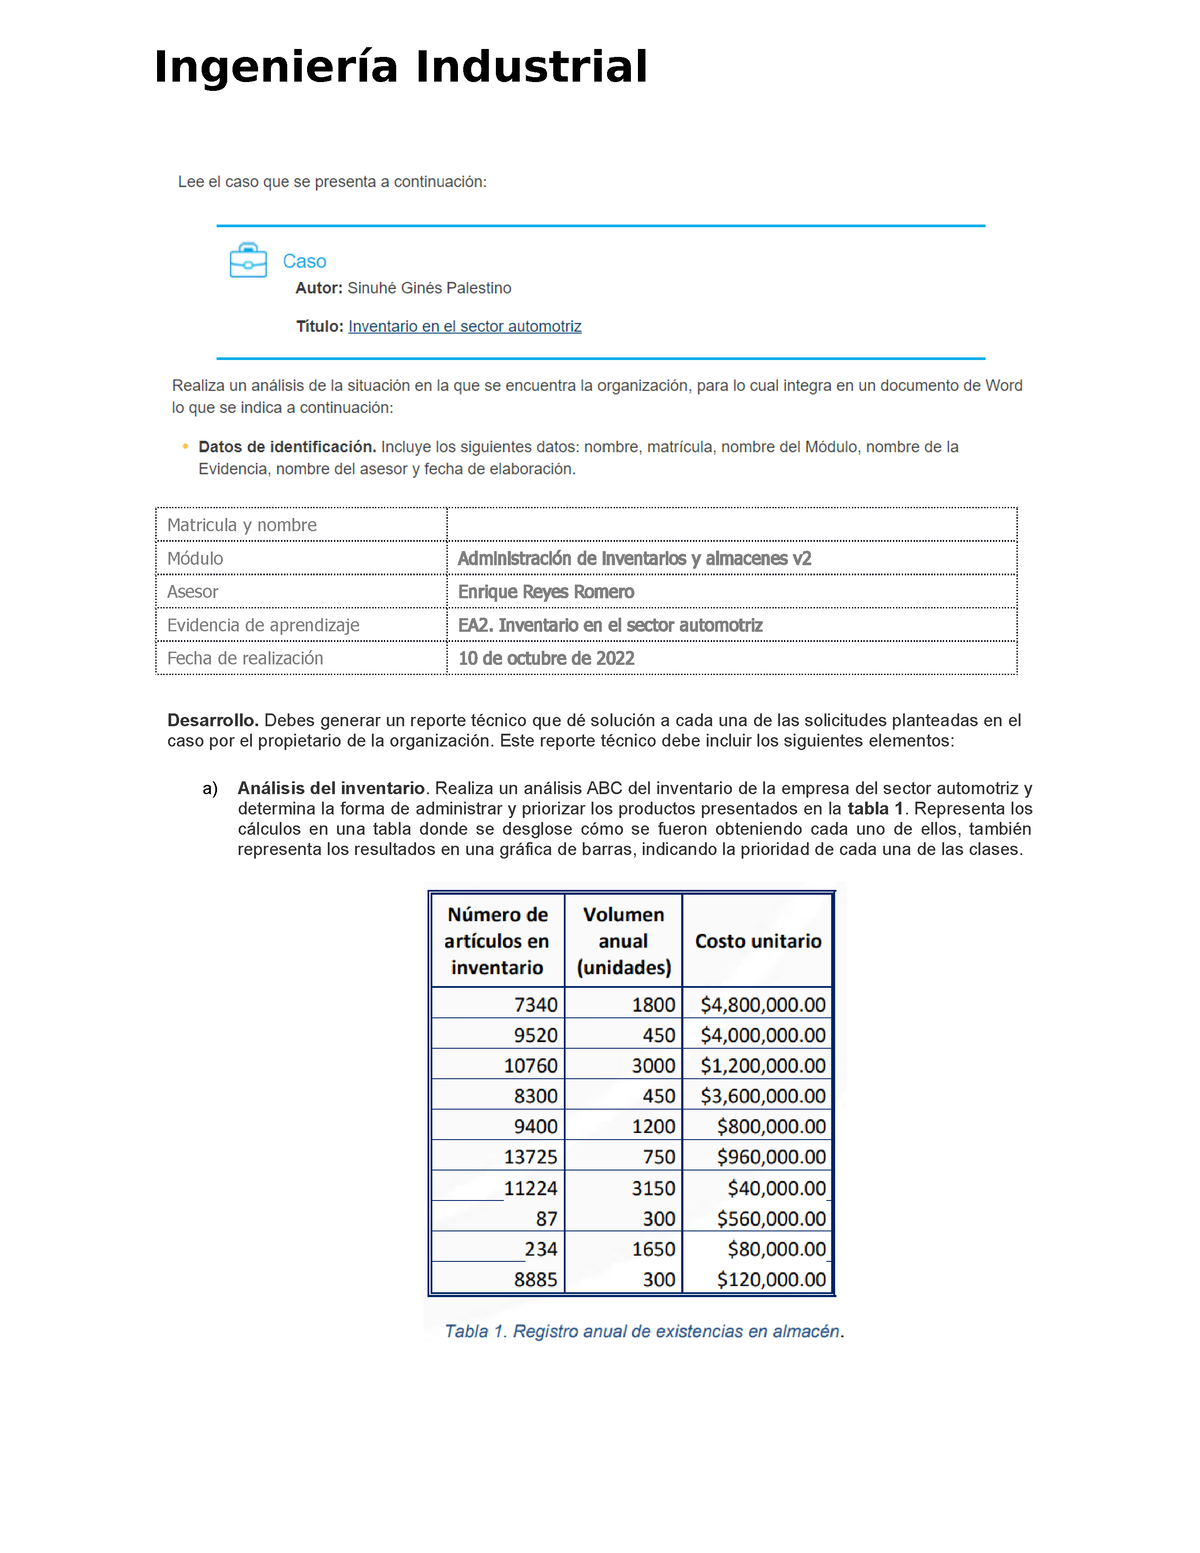 Ea2 Inventario En El Sector Automotriz Matricula Y Nombre Módulo Administración De 7390